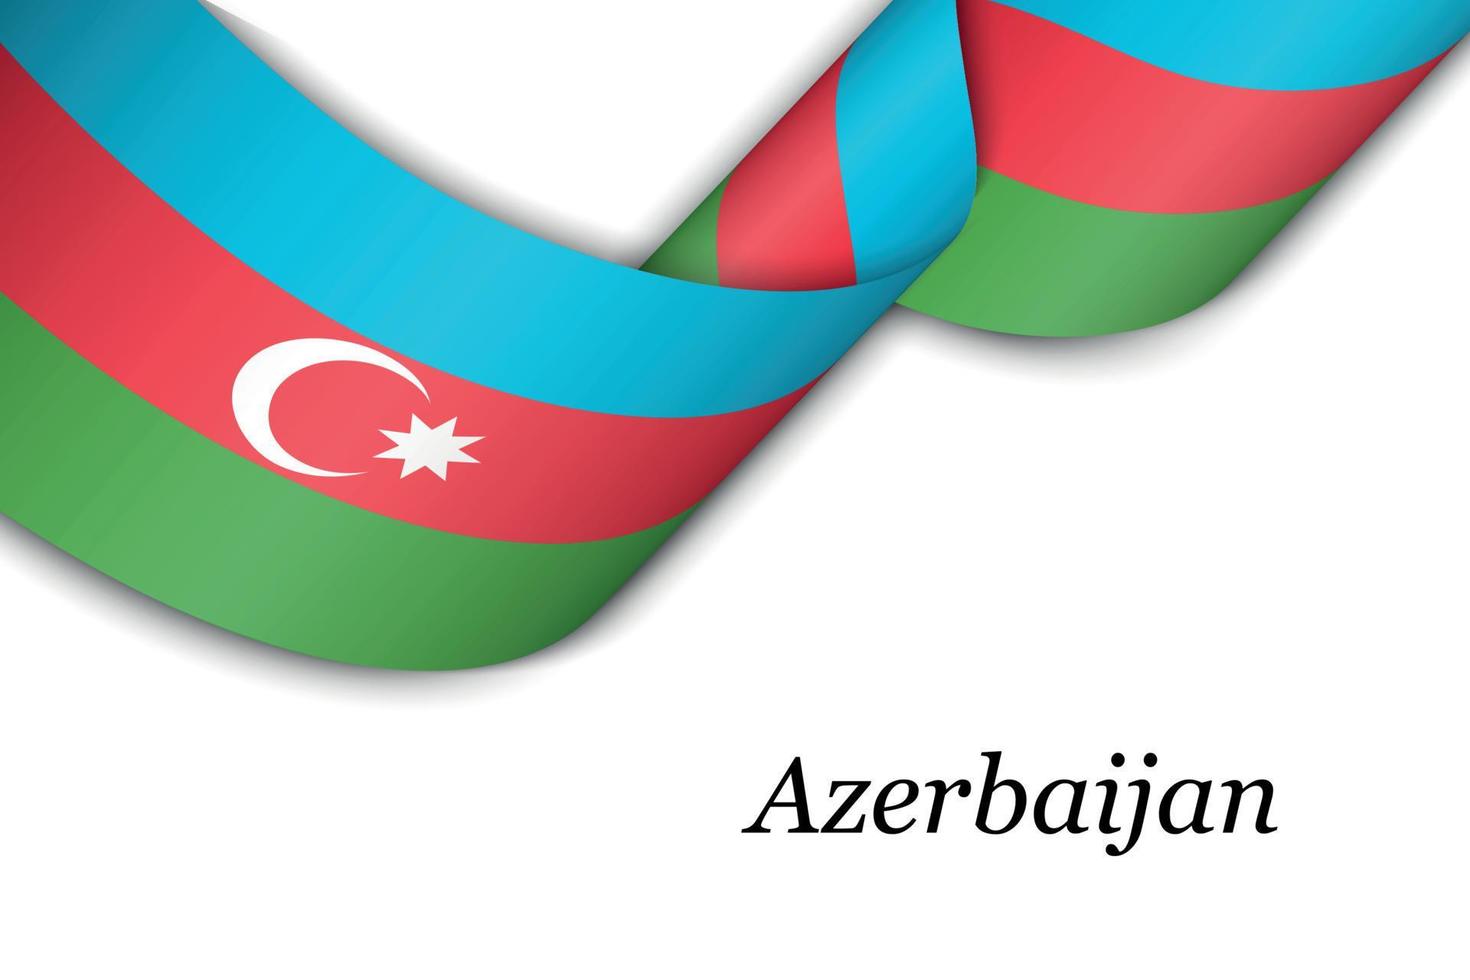 schwenkendes band oder banner mit flagge aserbaidschans vektor